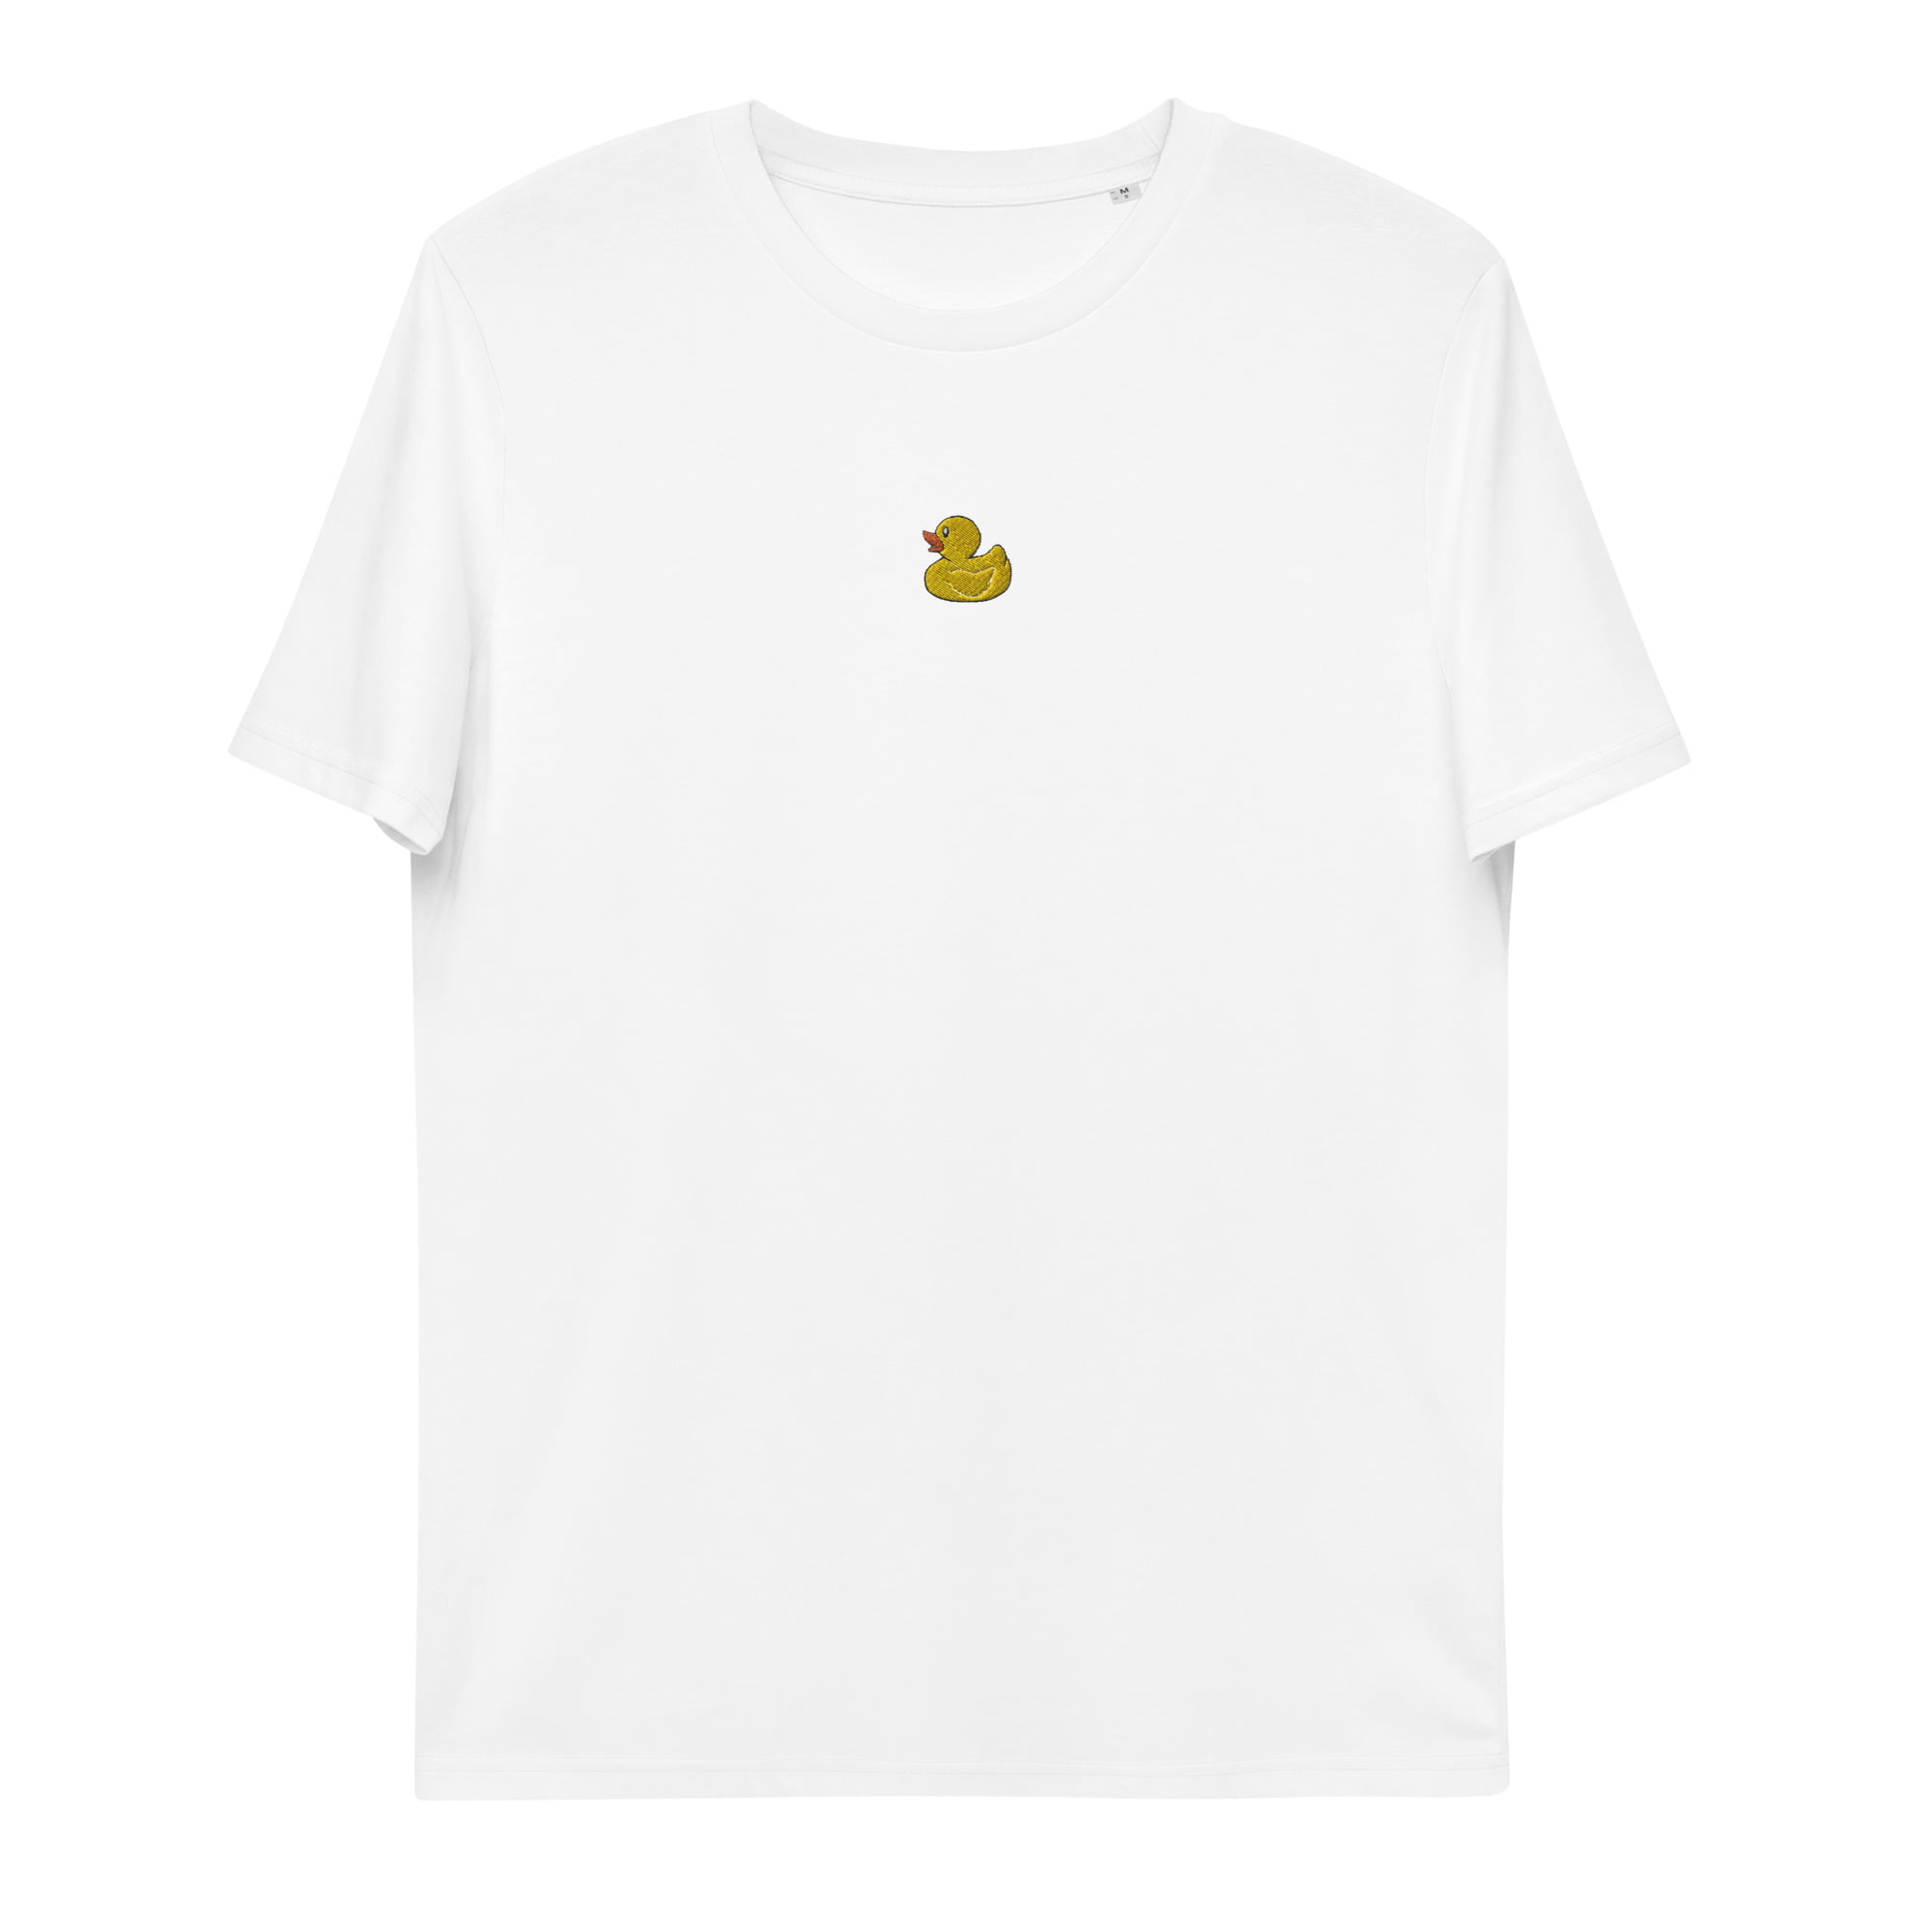 unisex organic cotton t shirt white front 64771dec03568